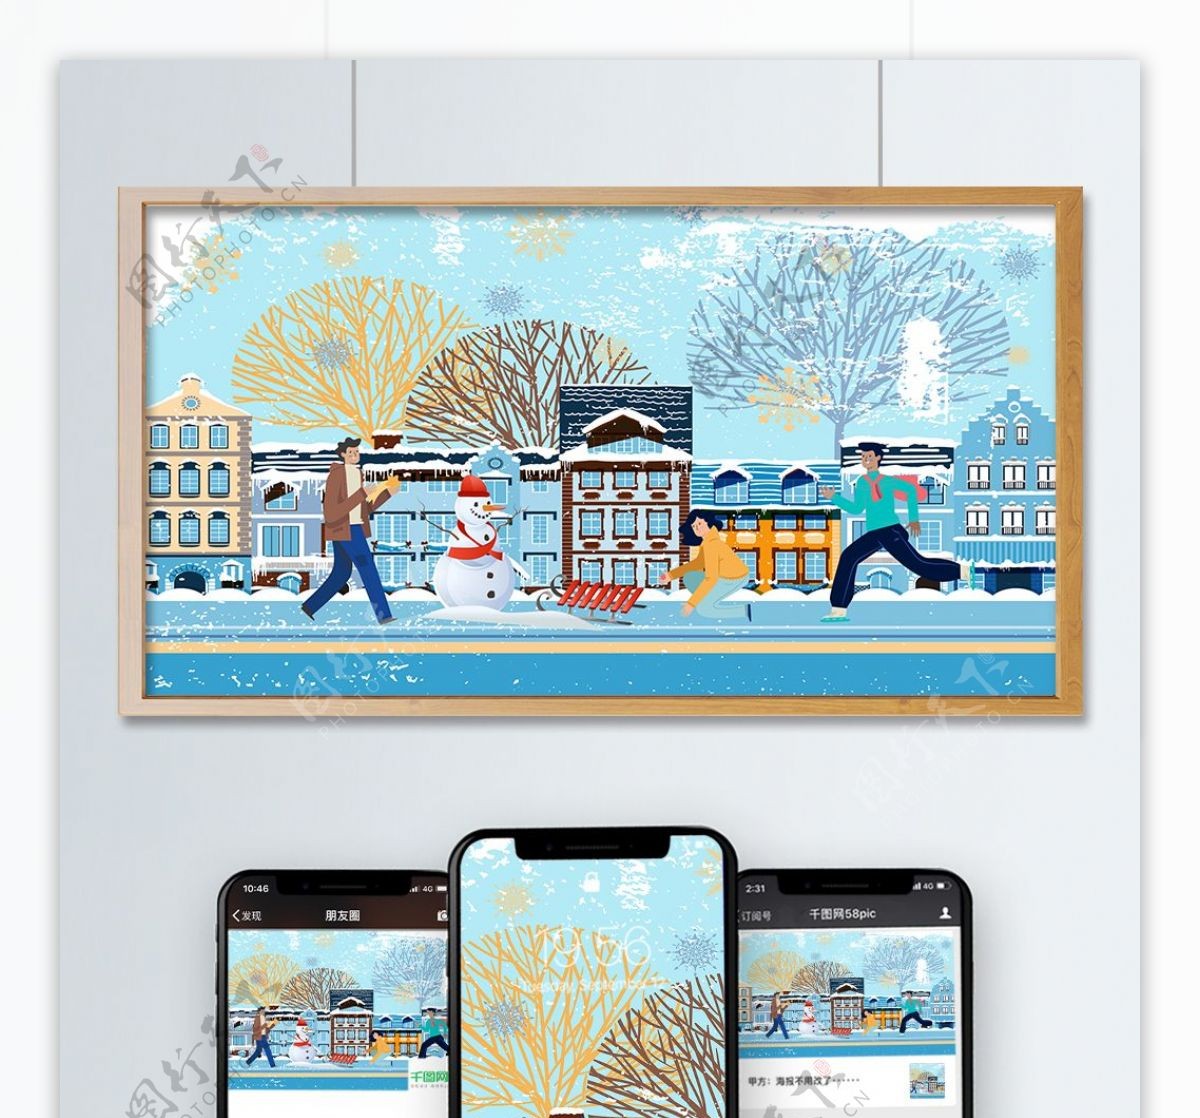 11月你好街道旁堆雪人滑雪矢量插画